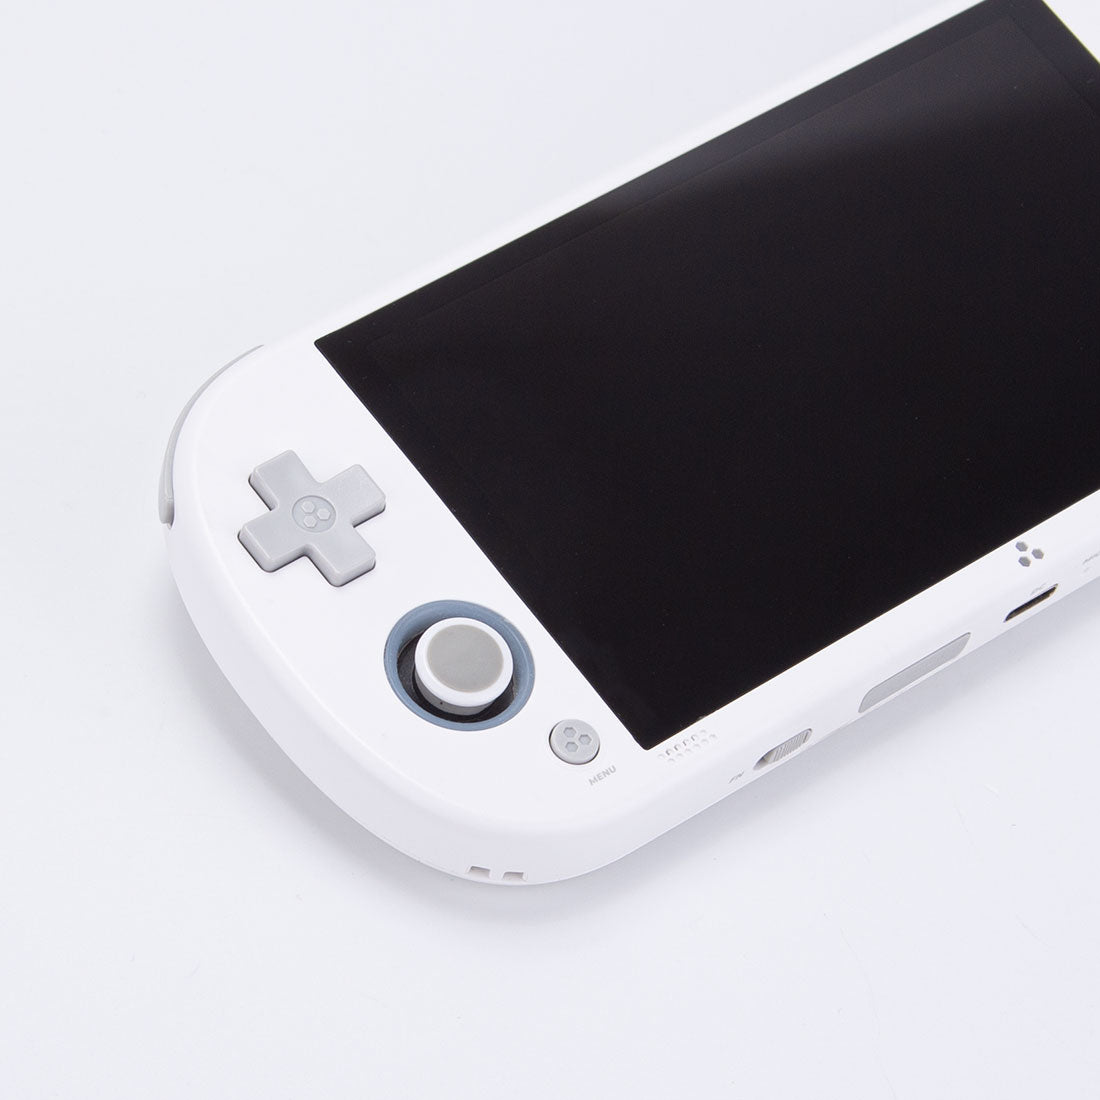 trimui-smart-pro-retro-handheld-game-console white (2).jpg__PID:efdd5644-a2f4-47ea-95f1-fc502145183a